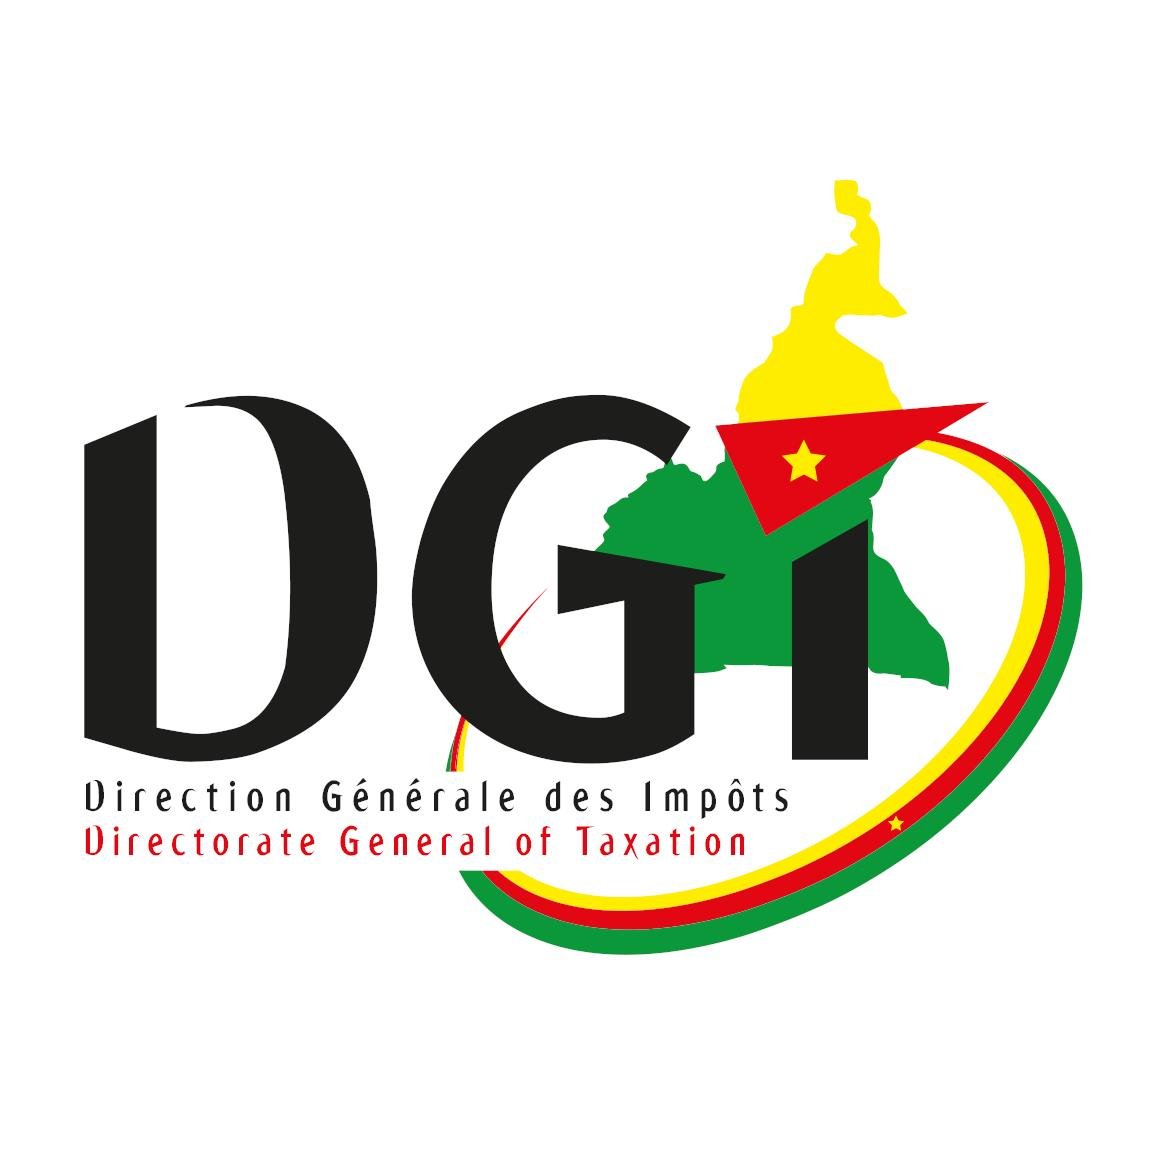 La DGI est un organe du Ministère des Finances. Ses missions sont définies par le décret no 2013/066 du 28 février 2013.